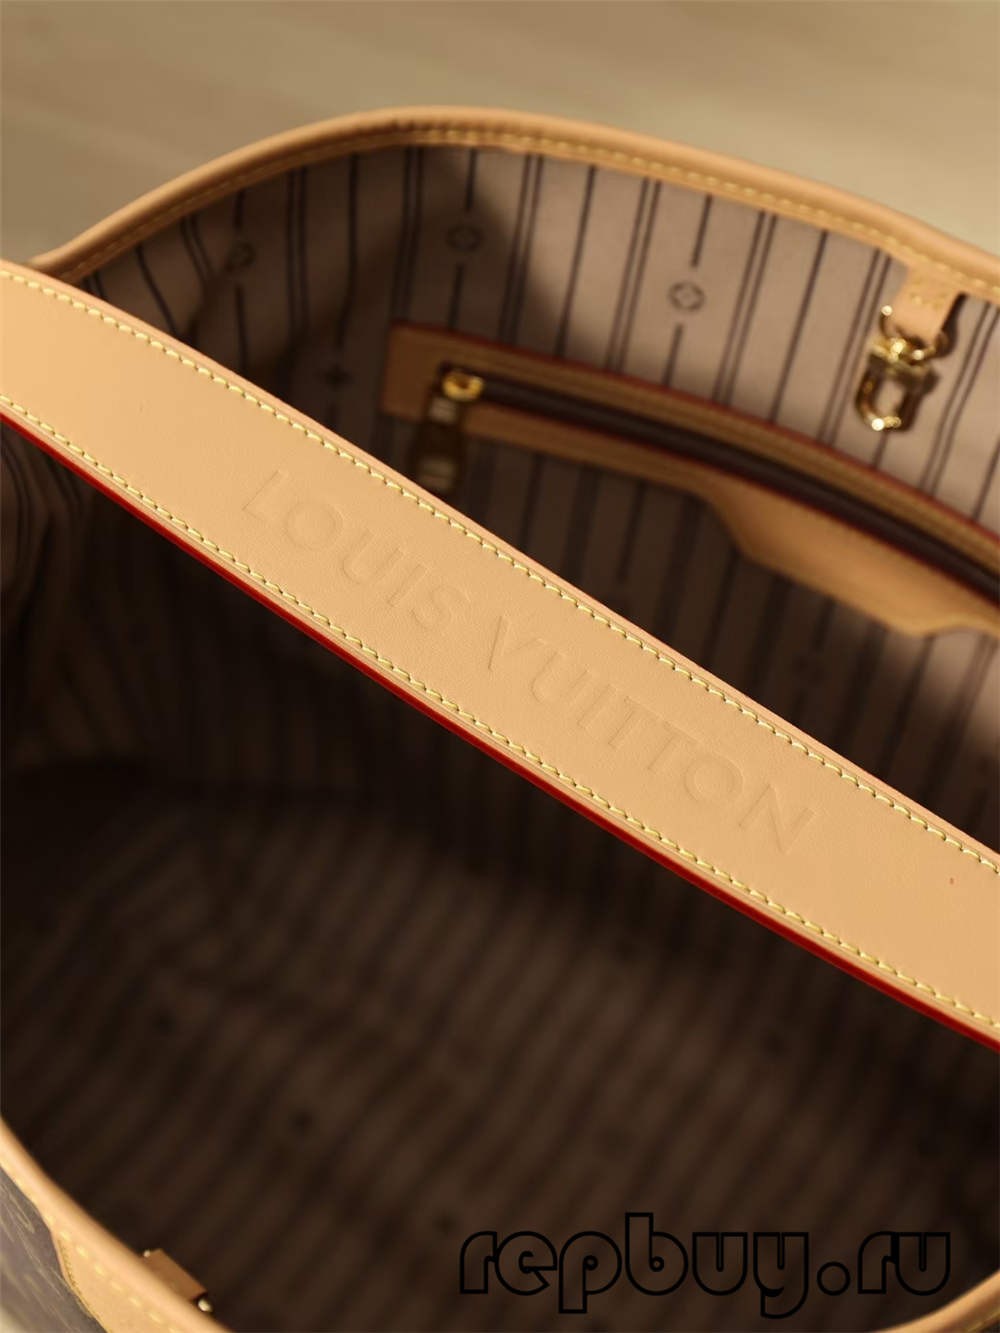 Louis Vuitton Re Fabrication kiváló minőségű replika táskák (2022 legfrissebb) - Legjobb minőségű hamis Louis Vuitton táska online áruház, Replica designer bag ru